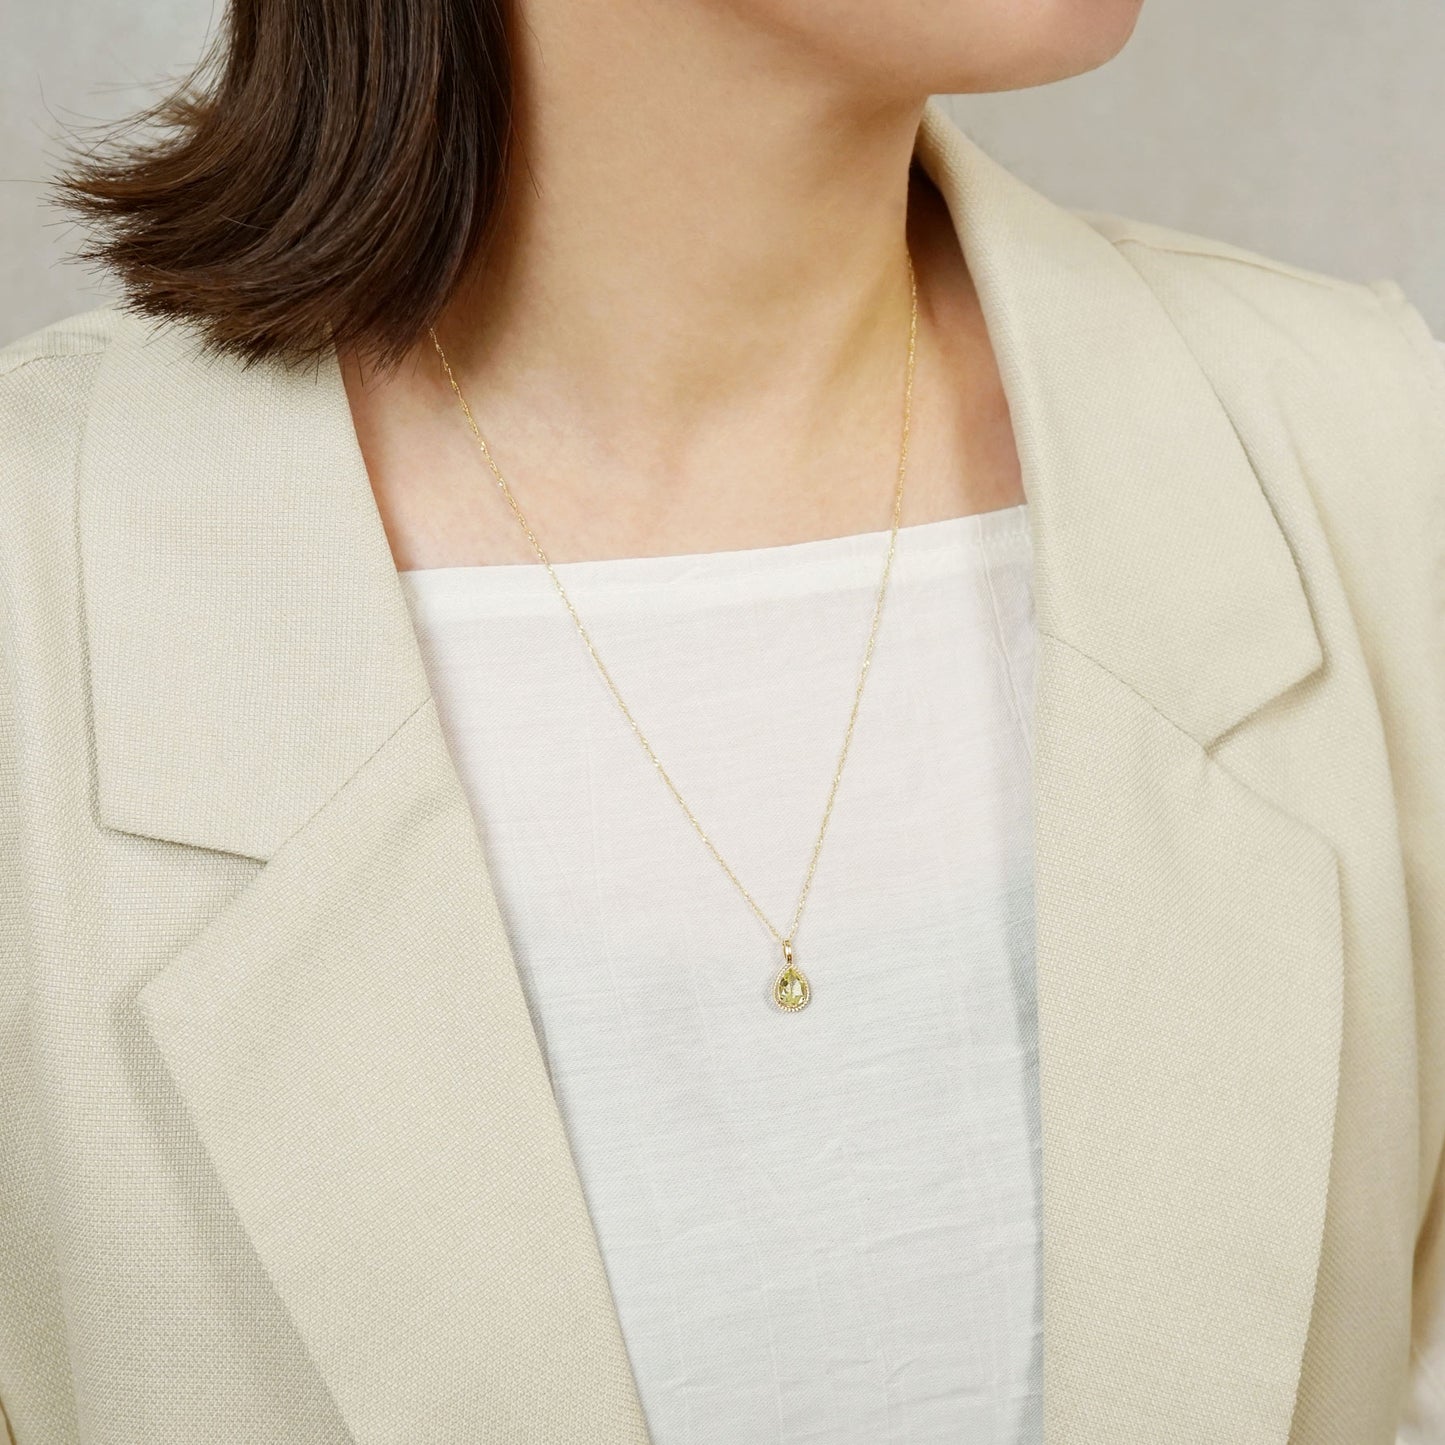 10K Lemon Quartz Drop Necklace Charm (Yellow Gold) - Model Image